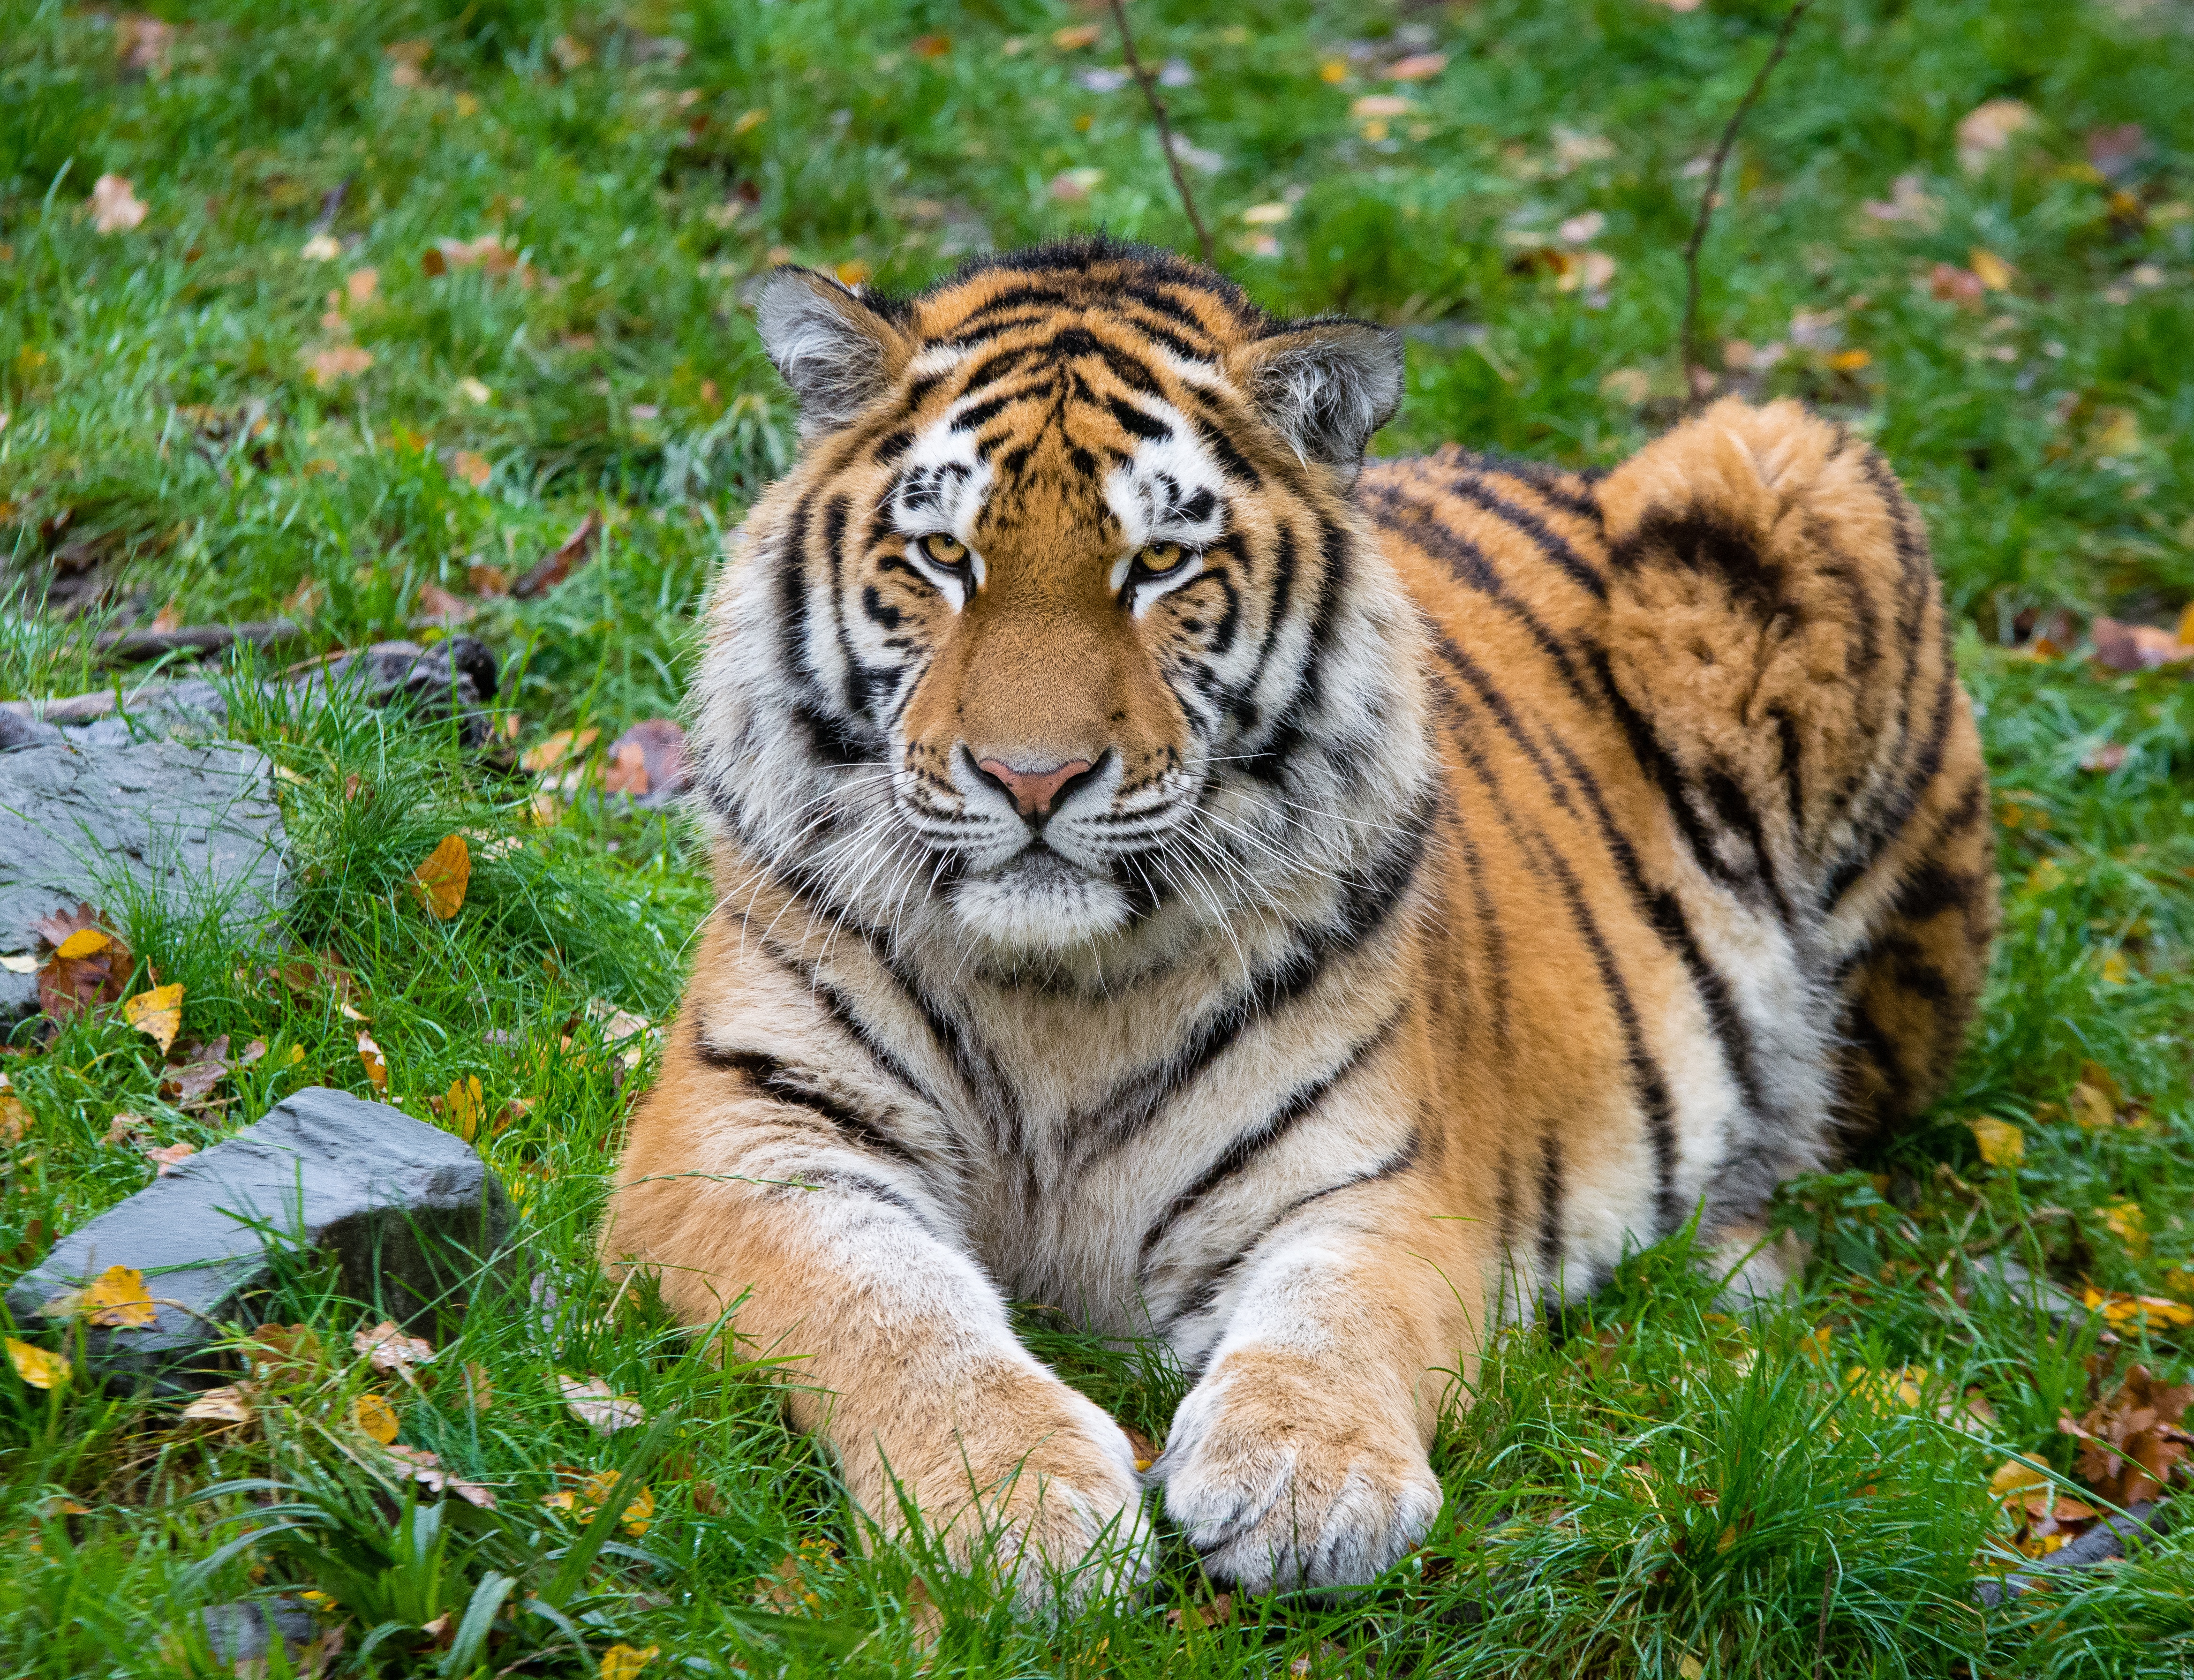 Скачать обои Сибирский Тигр на телефон бесплатно